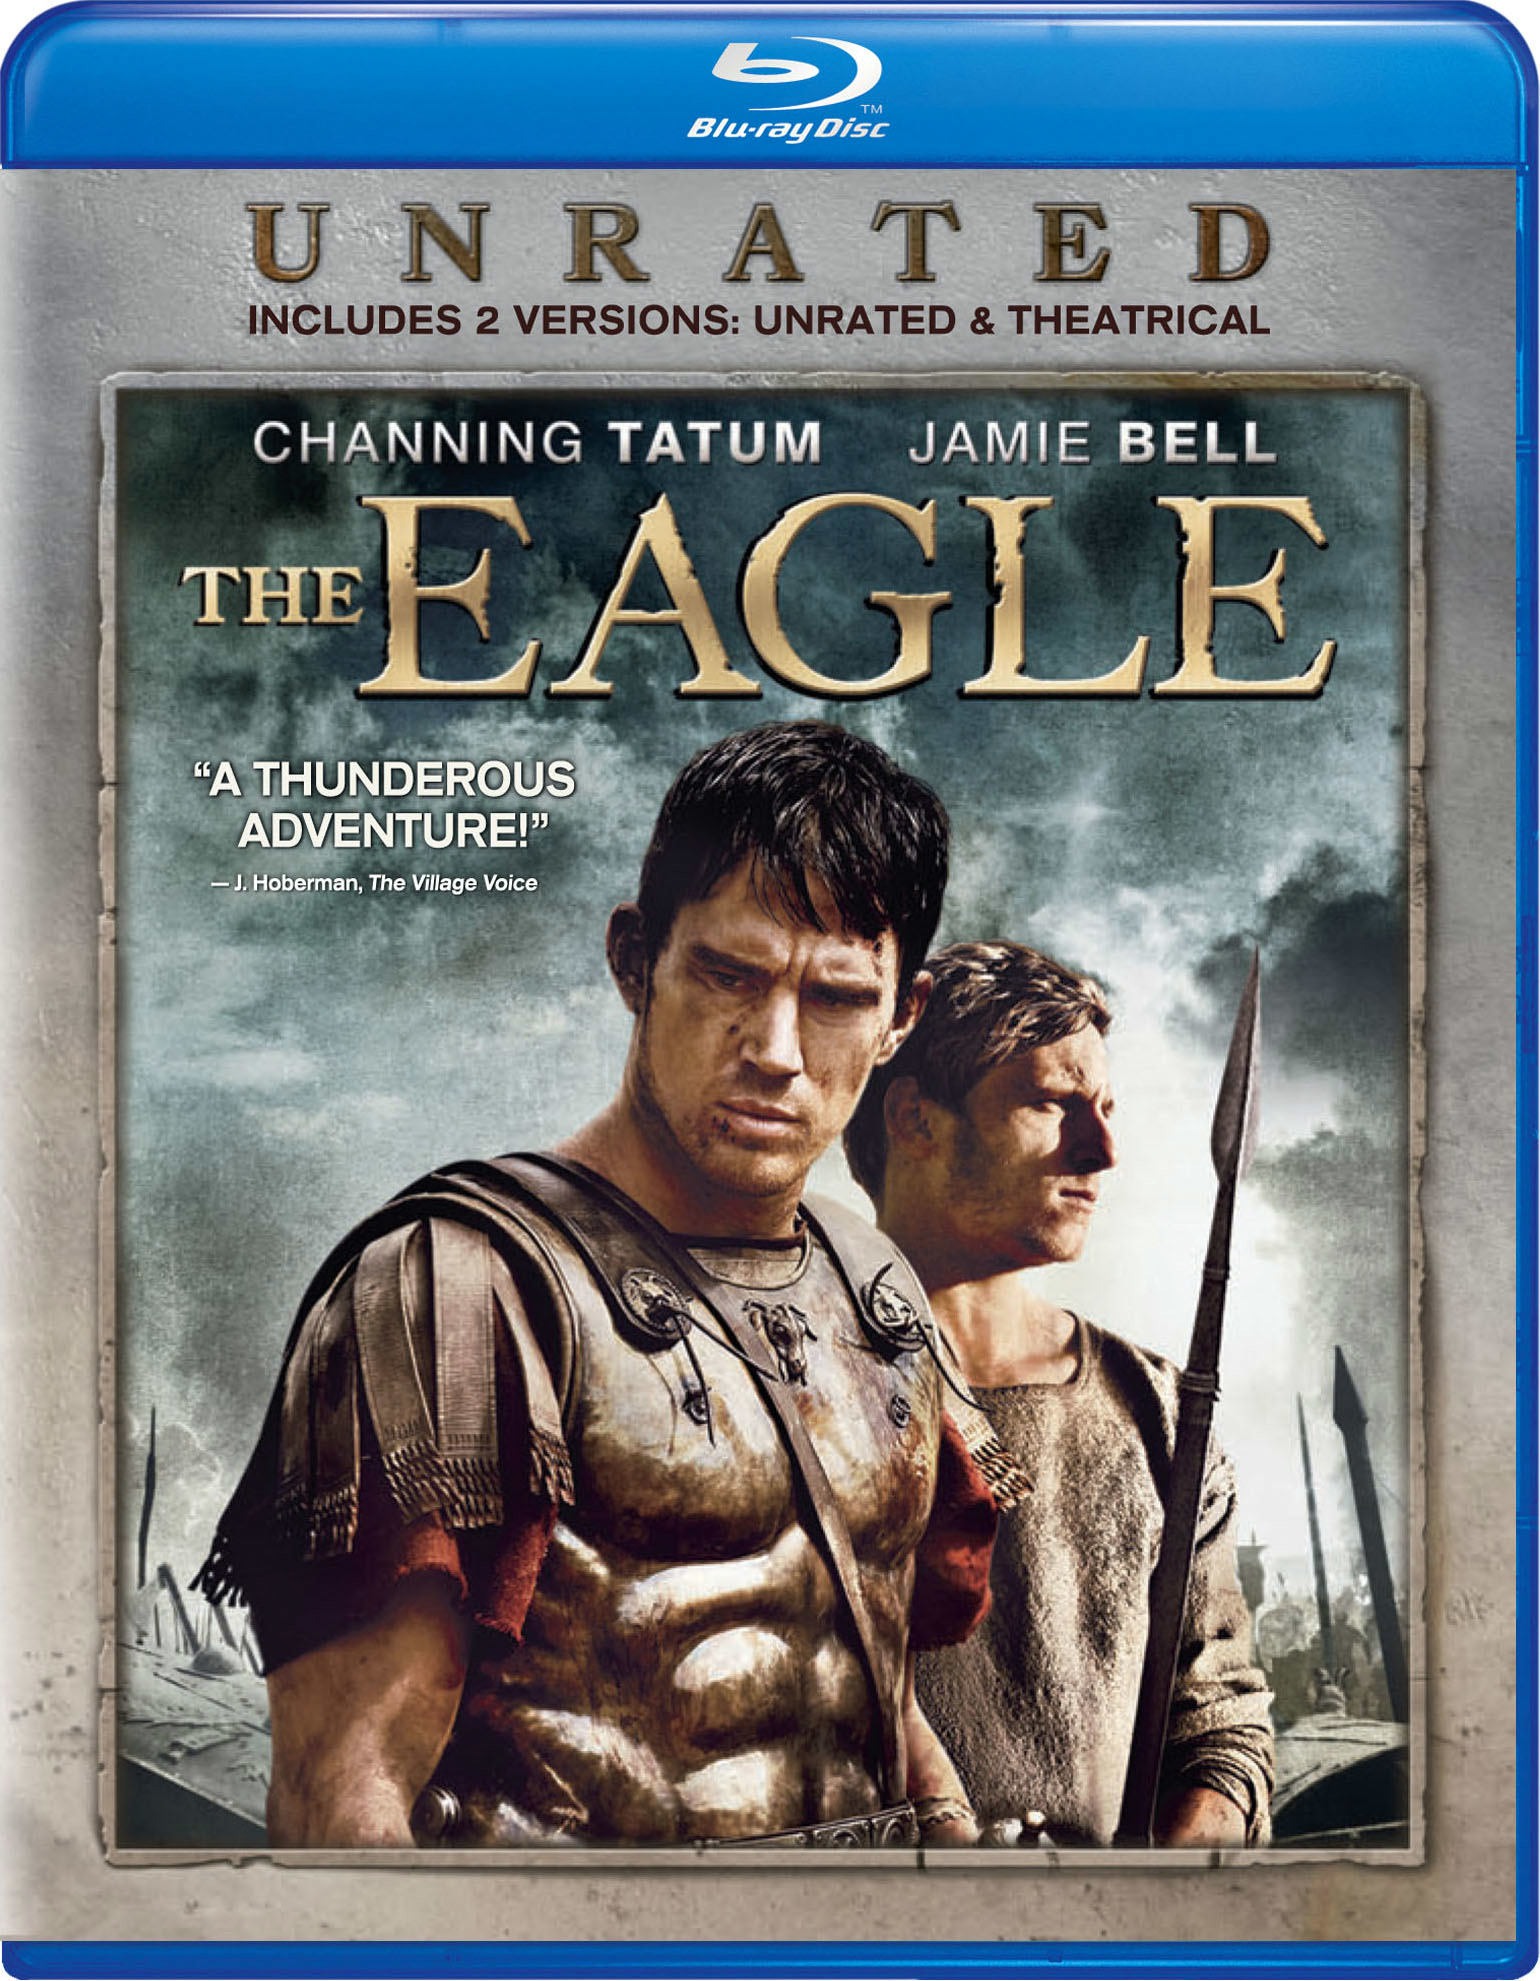 the eagle movie english